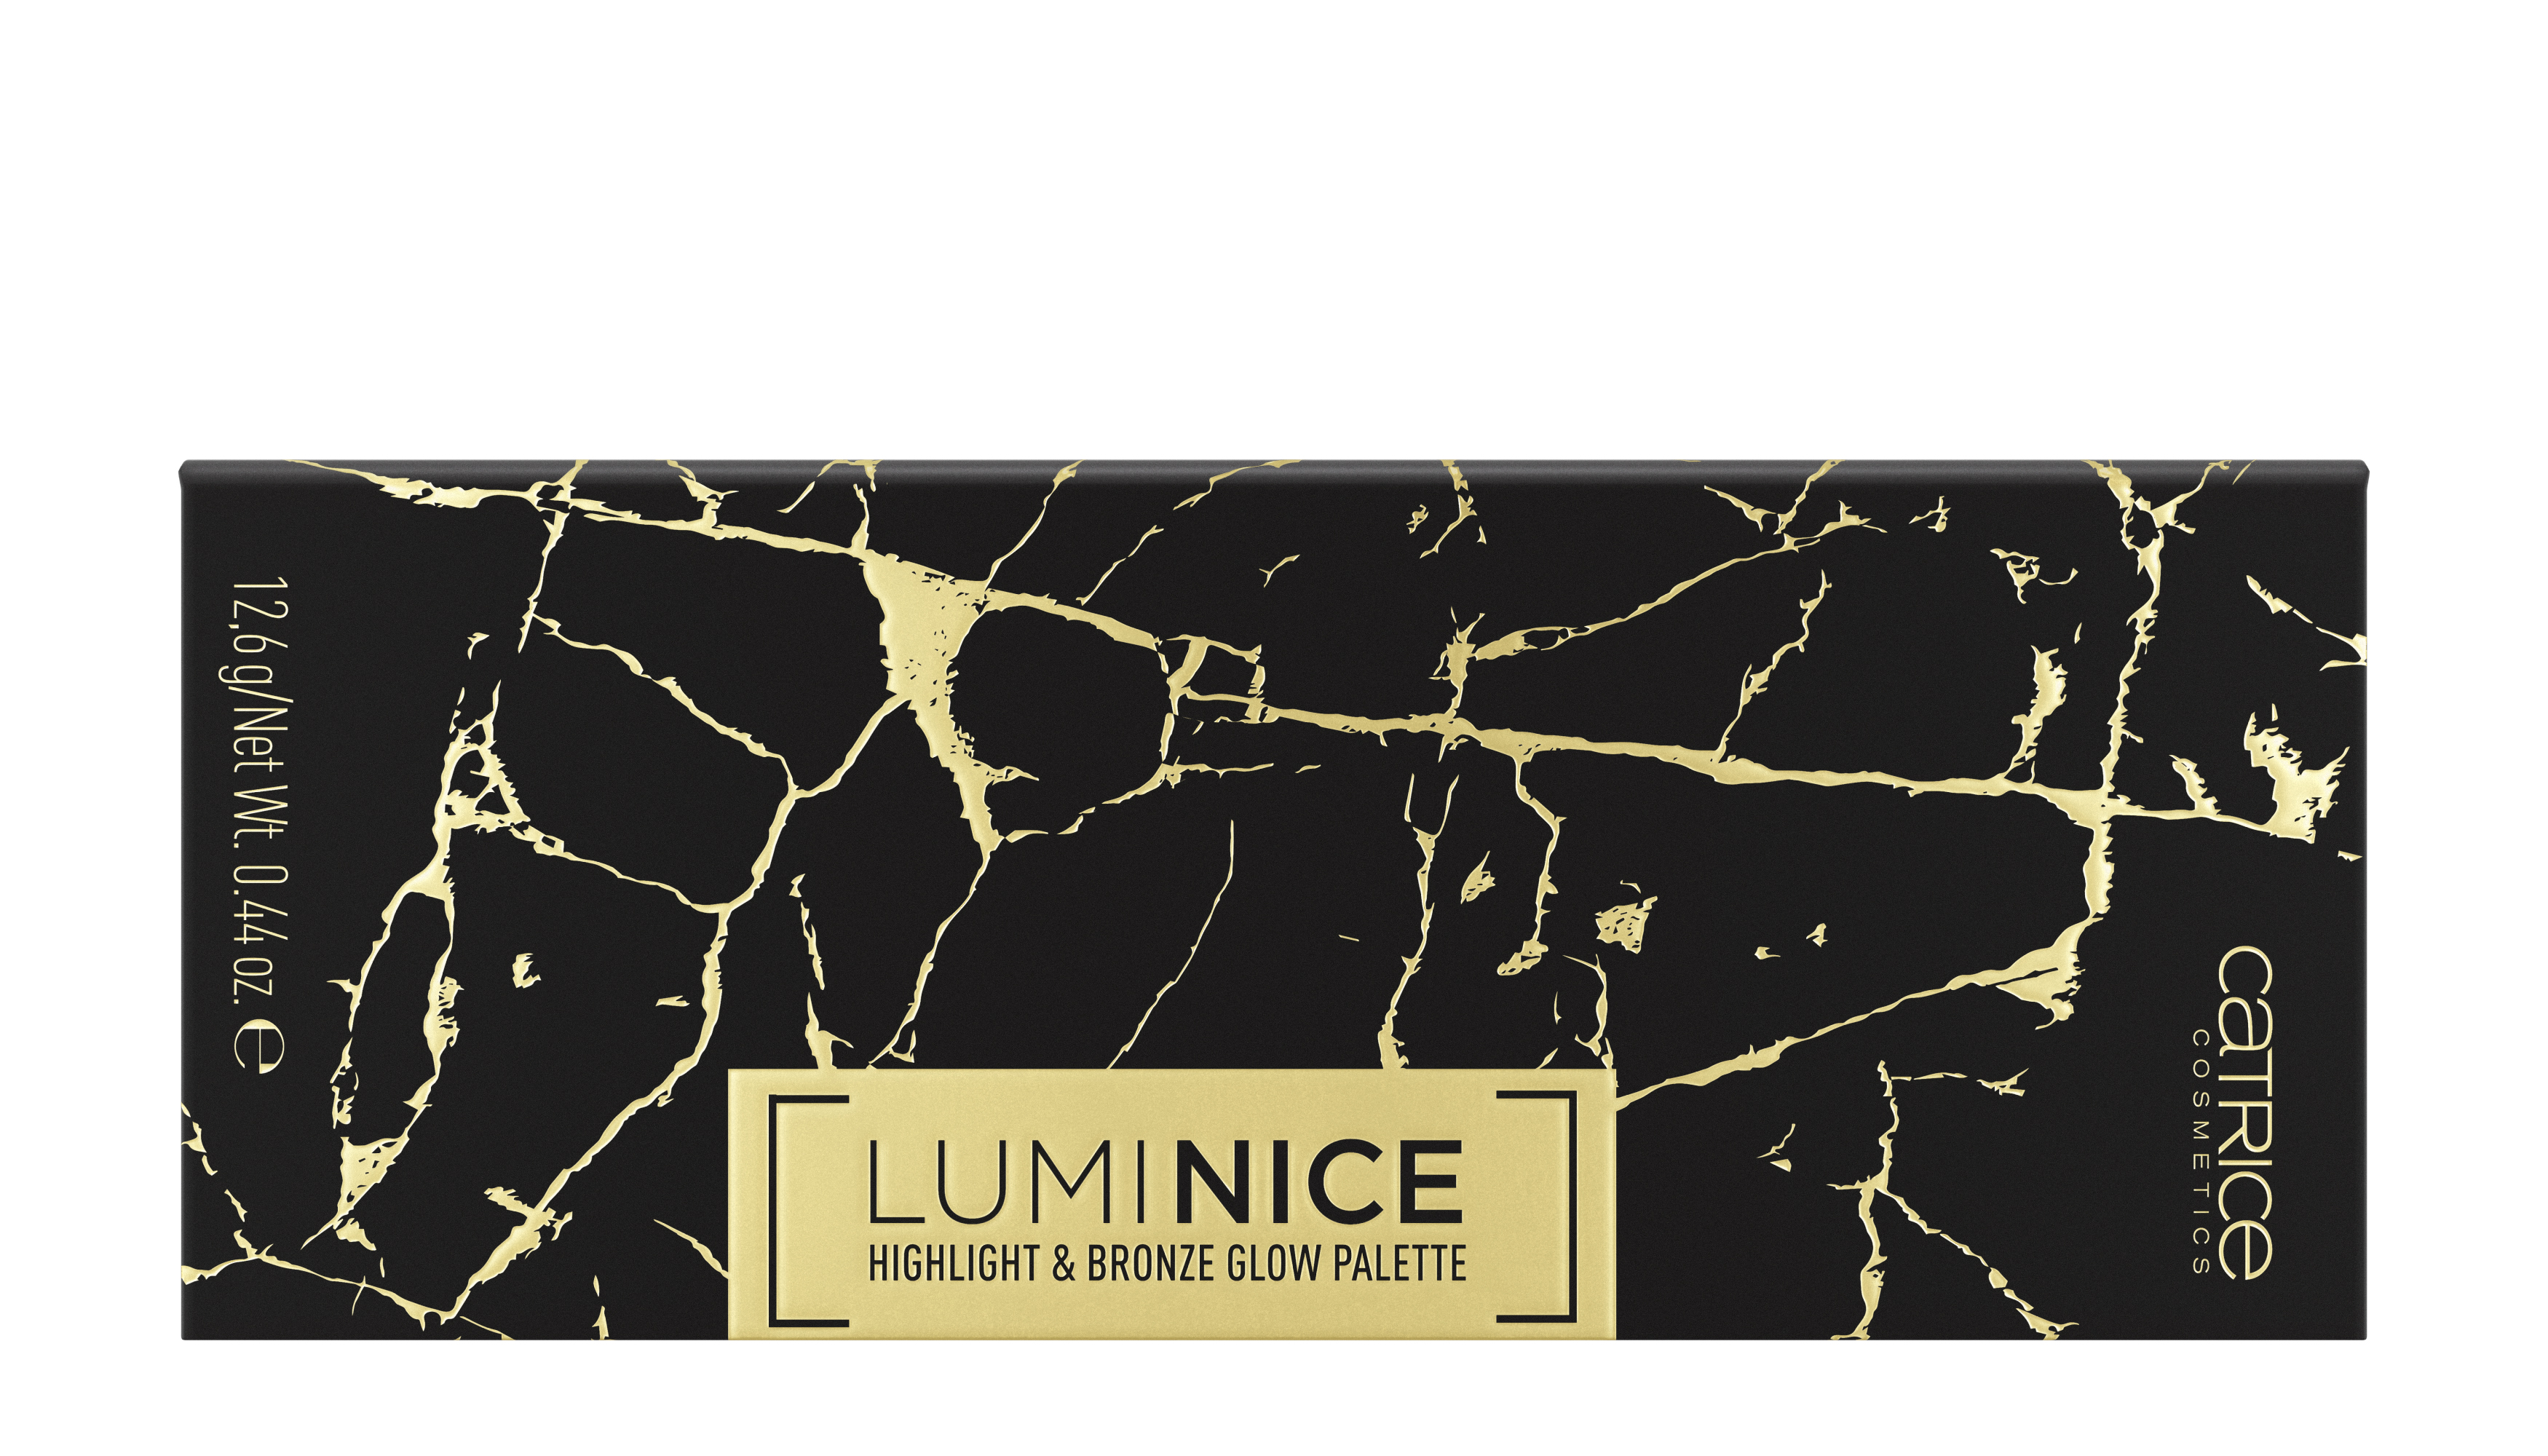 คาทริซลูมิไนซ์ไฮไลท์แอนด์บรอนซ์โกลว์พาเลตต์020 Catrice Luminice Highlight & Bronze Glow Palette 020 (12.6 g)